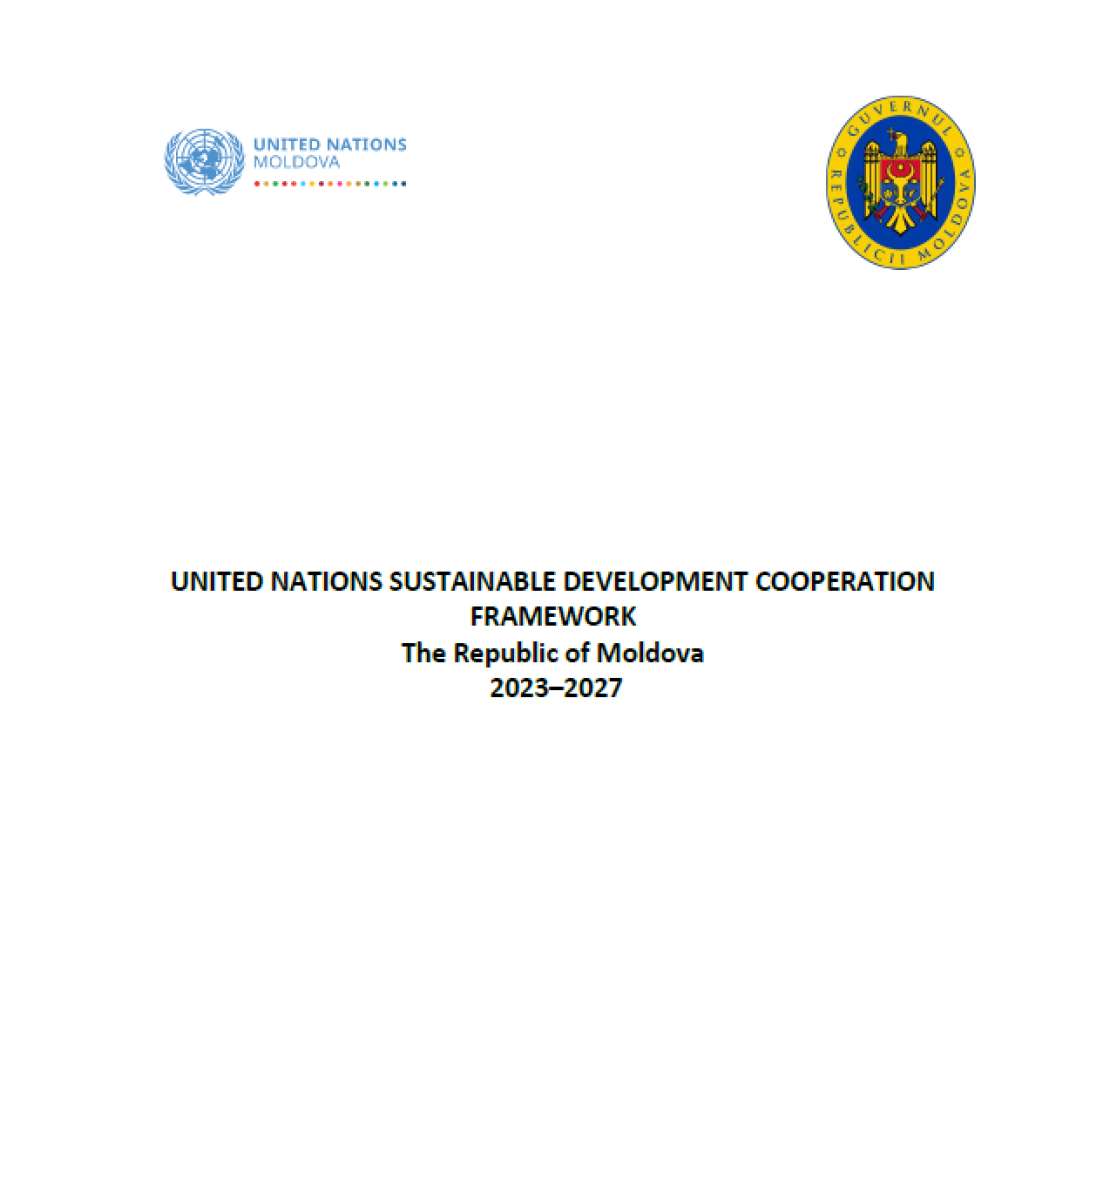 Se trata de un documento con fondo blanco y texto en negro. Los logos del equipo de las Naciones Unidas en el país y del gobierno aparecen en la parte superior.